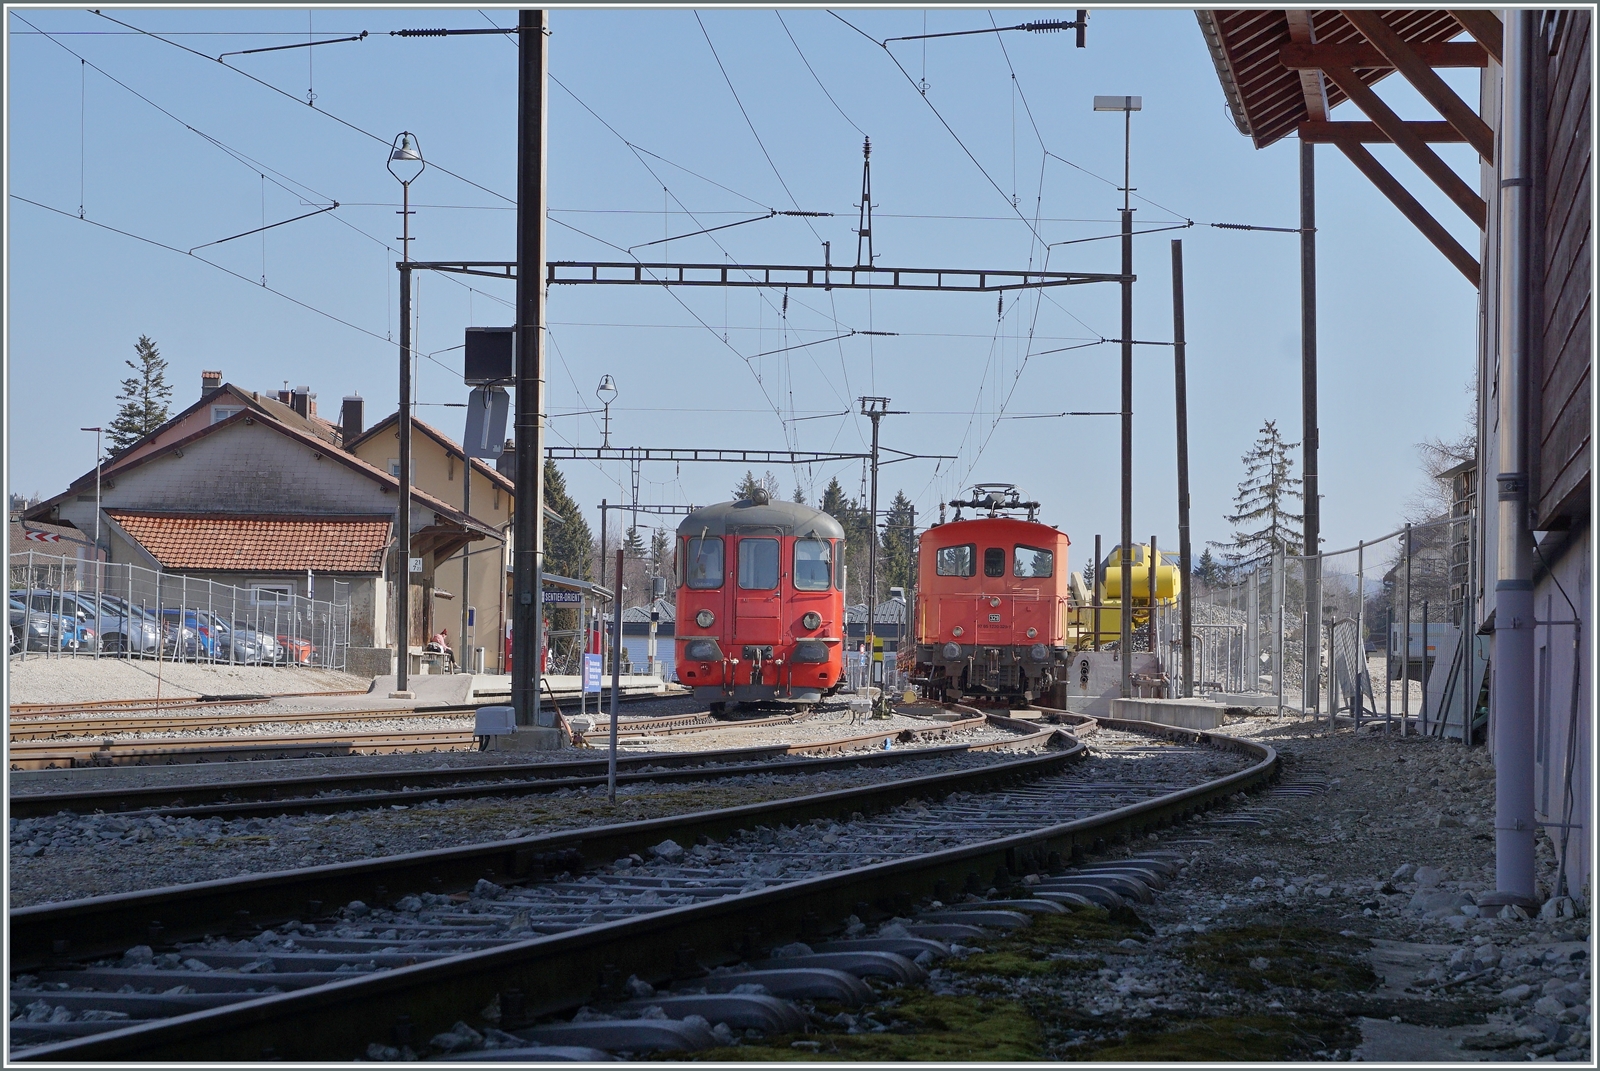 Ein Blick in den Bahnhof von Le Sentier Orient zeigt den Steuerwagen ABt 5 85 80 33 3758-7 des ausnahmsweise hier abgestellten Schülerzuges und den Tem III 329 (97 85 1220 329-7). 

24. März 2022